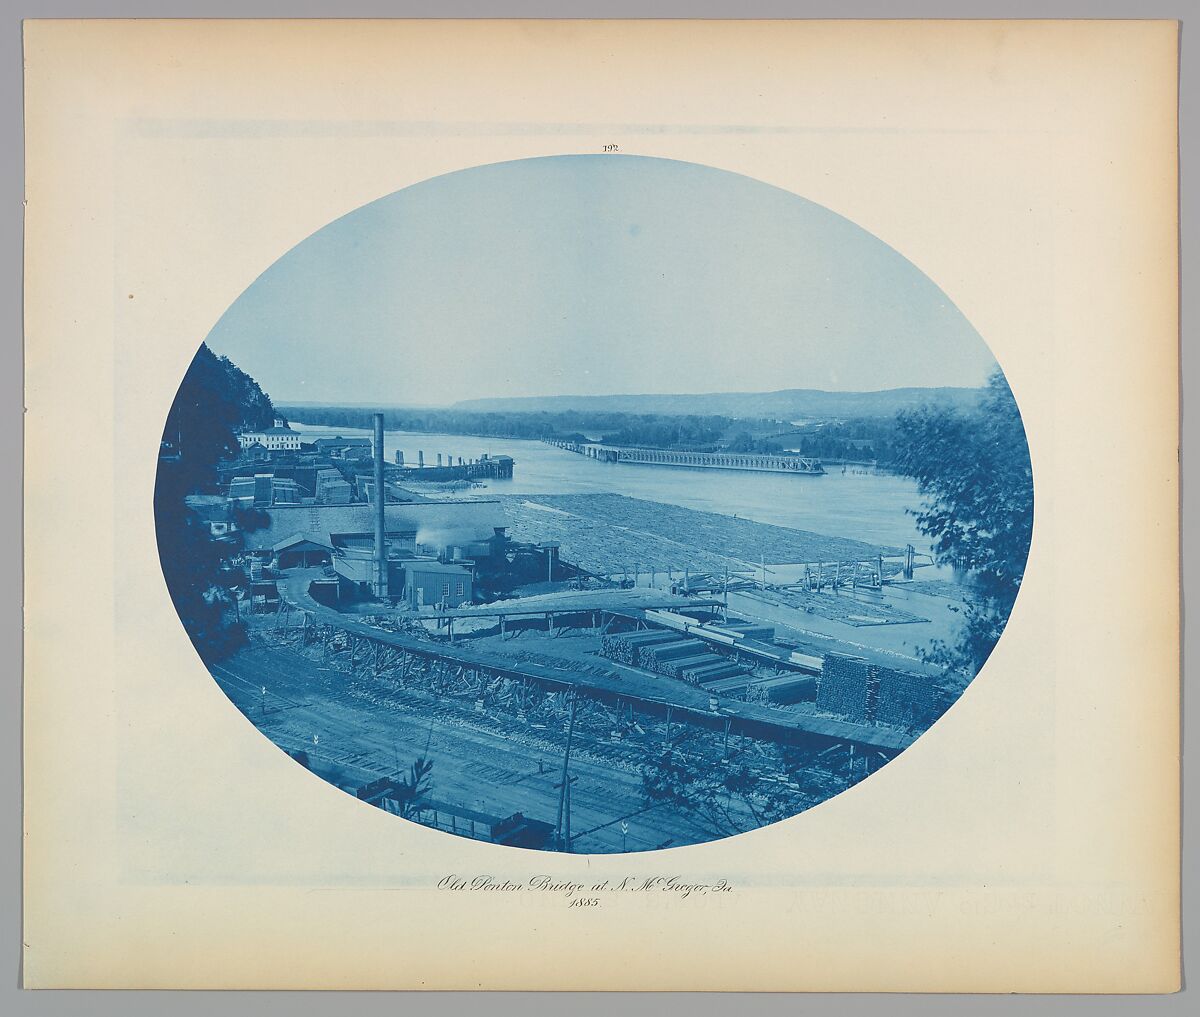 Old Ponton Bridge at N. McGregor, Ia., Henry P. Bosse, Cyanotype